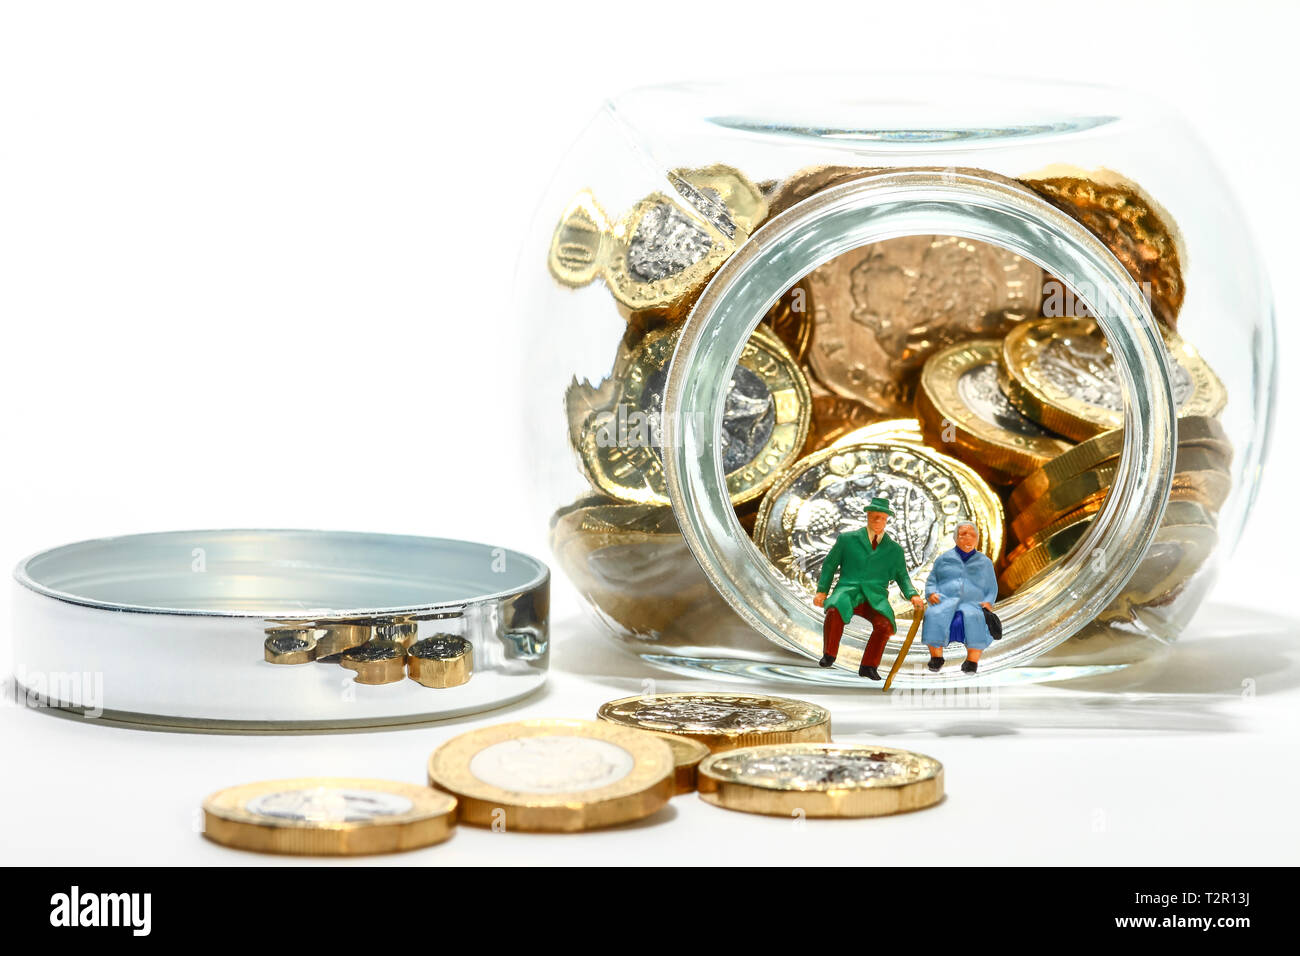 Diorama concettuale immagine di anziani figure in miniatura seduto sul bordo di un vasetto di vetro pieno di libbra di monete Foto Stock